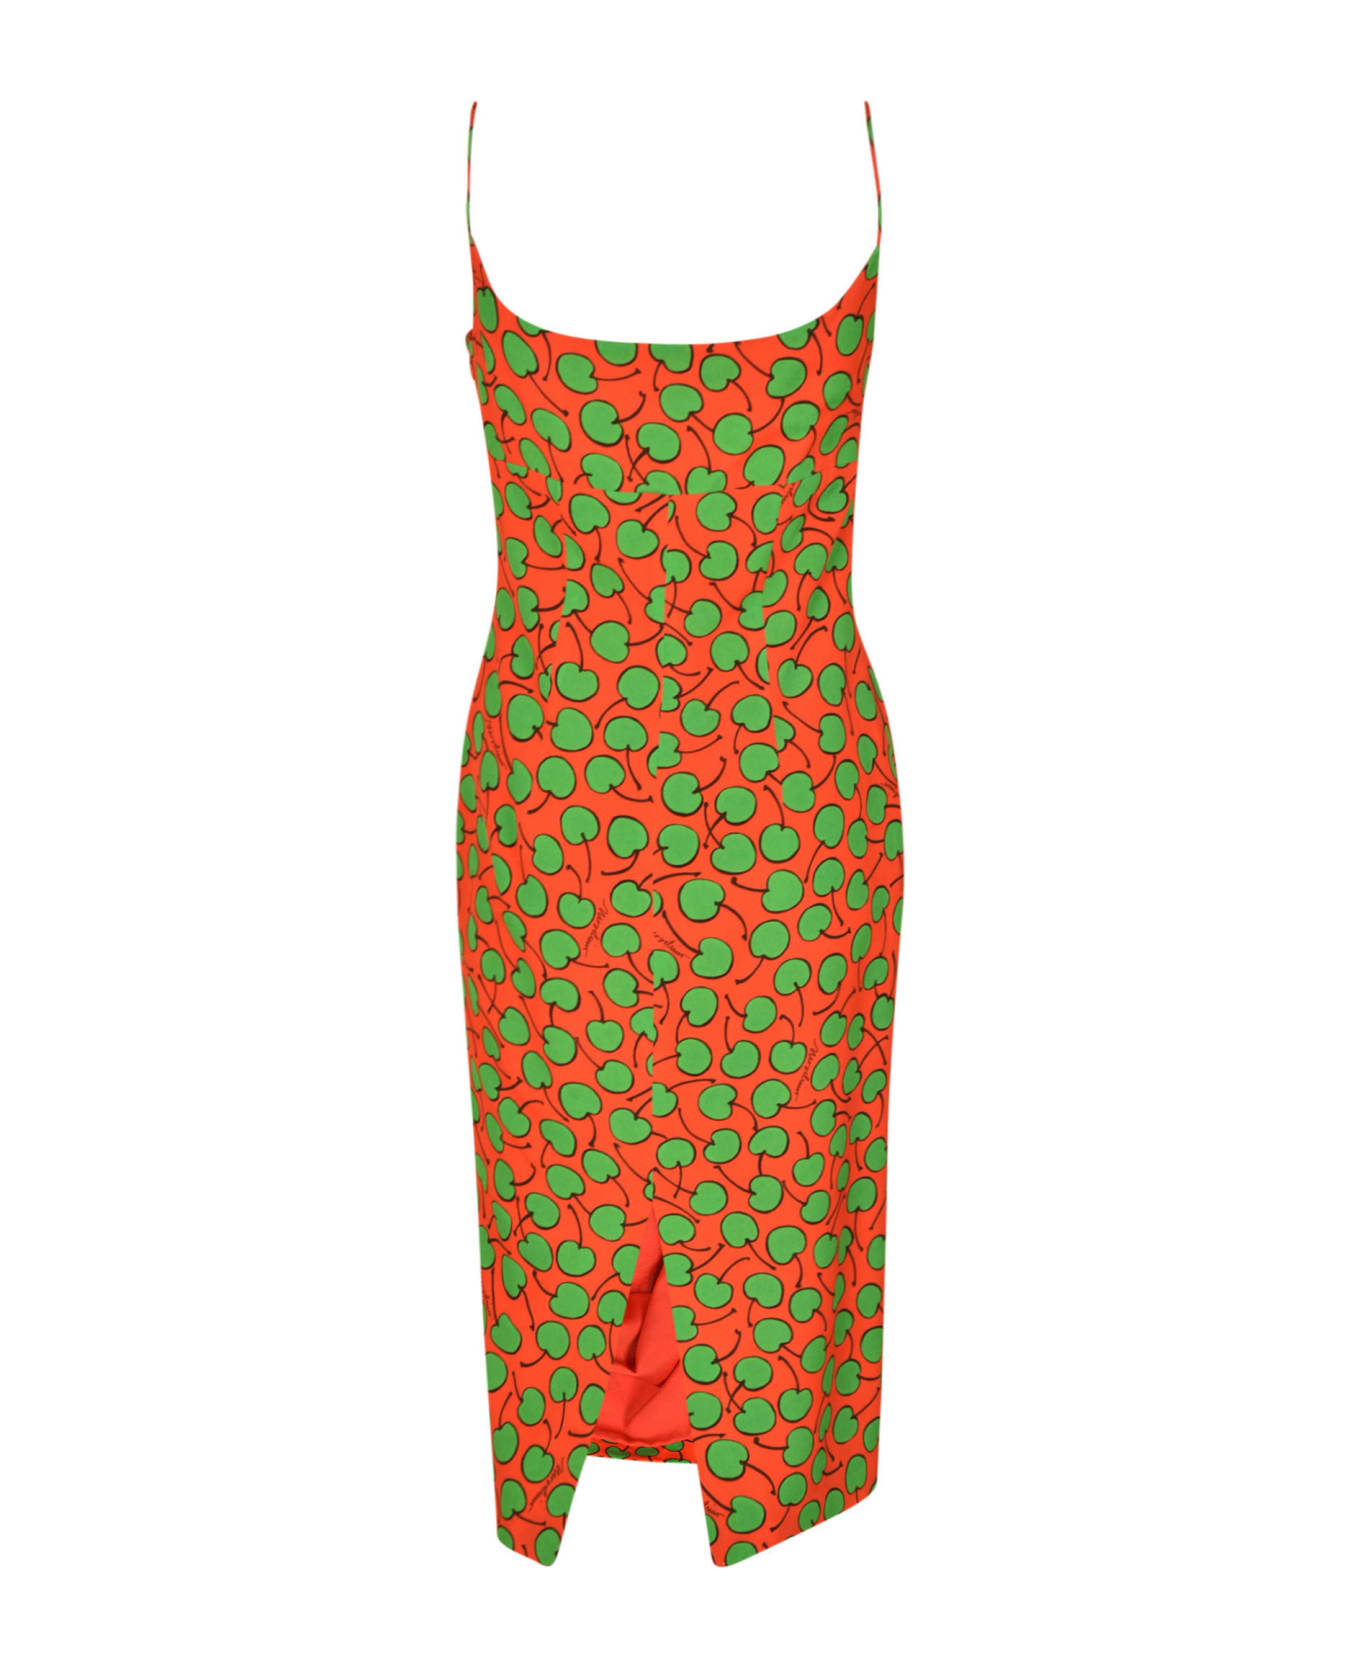 Moschino Cherry Monogram Print Dress - RED/GREEN